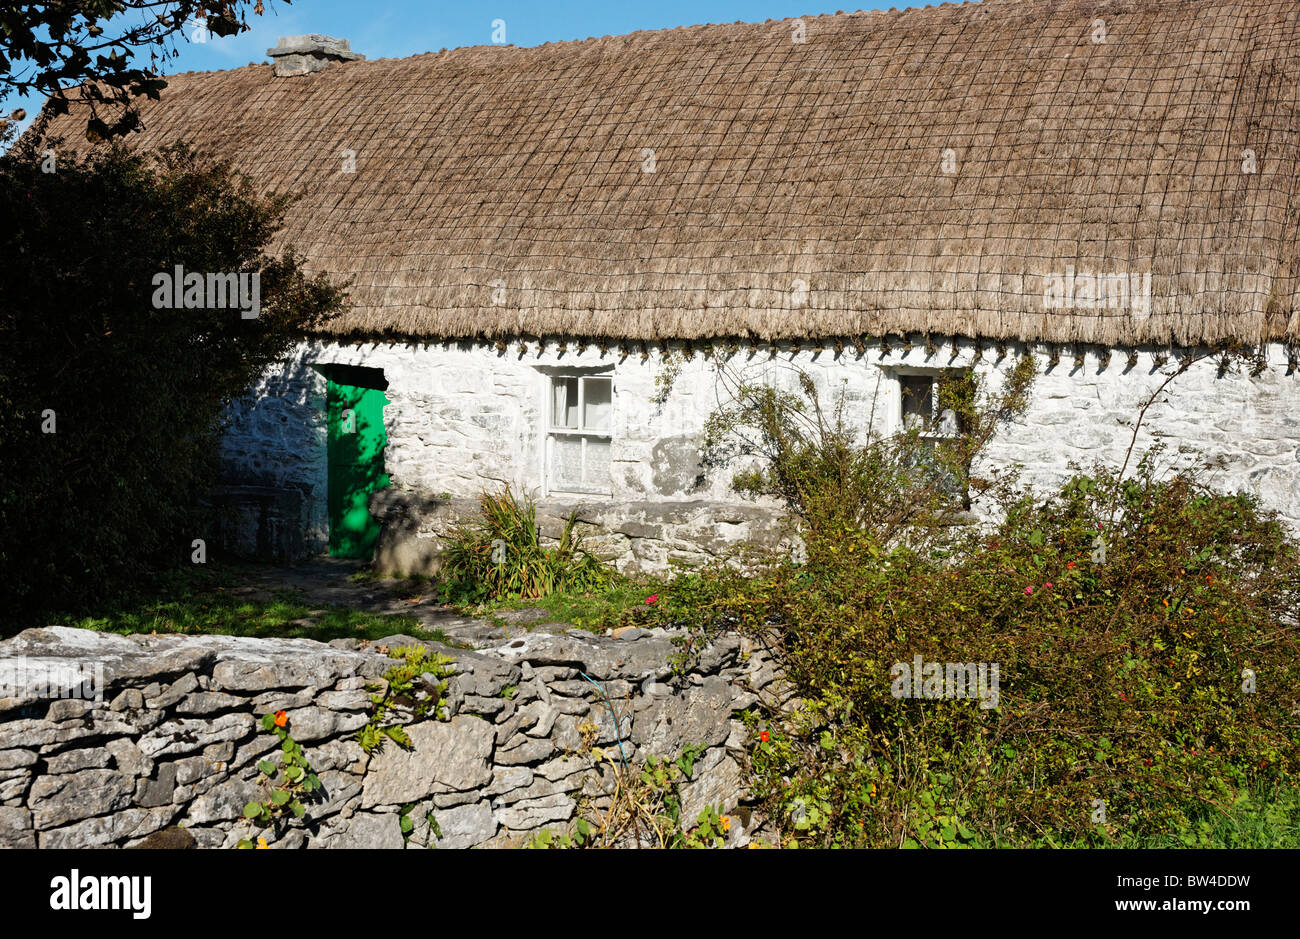 Enseñar Synge, John Millington Synge's Cottage en Carrownlisheen, Inis Meain, las Islas Aran, en el Condado de Galway, Connaught, Irlanda. Foto de stock